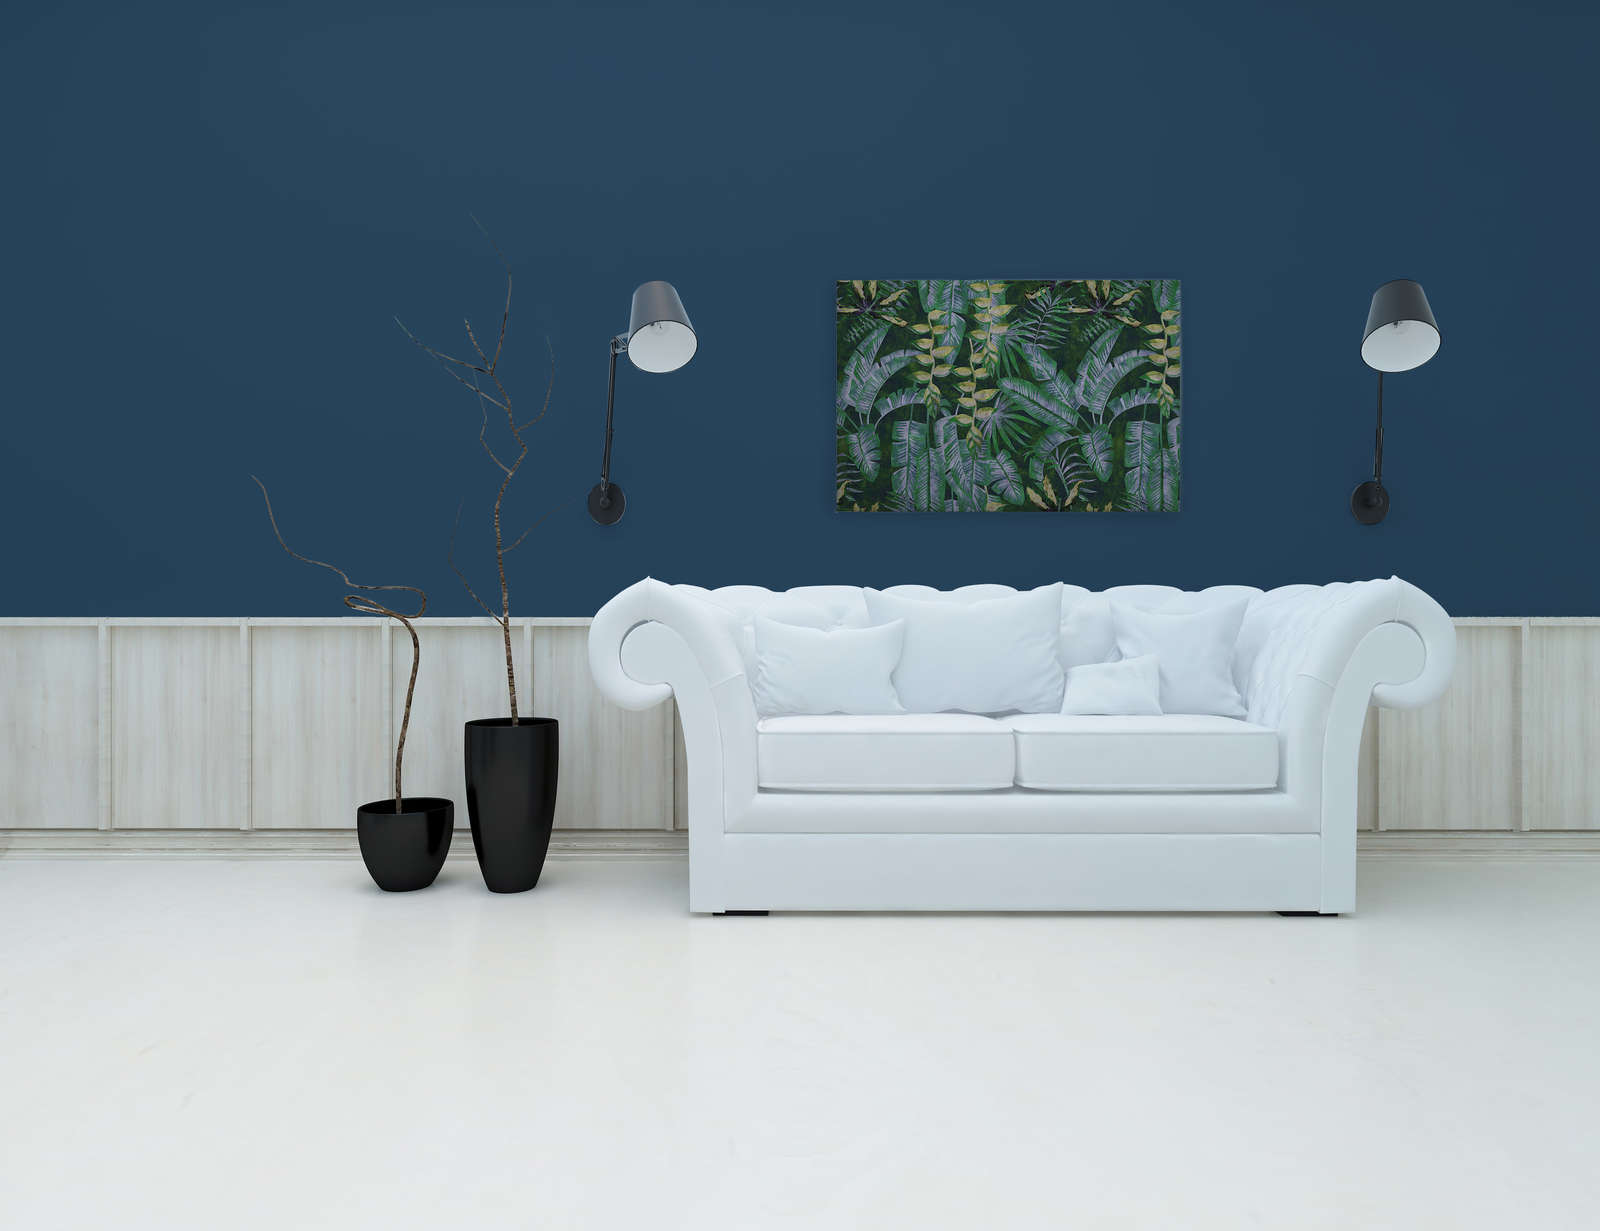             Tropicana 2 - Canvas schilderij met tropische planten - 0.90 m x 0.60 m
        